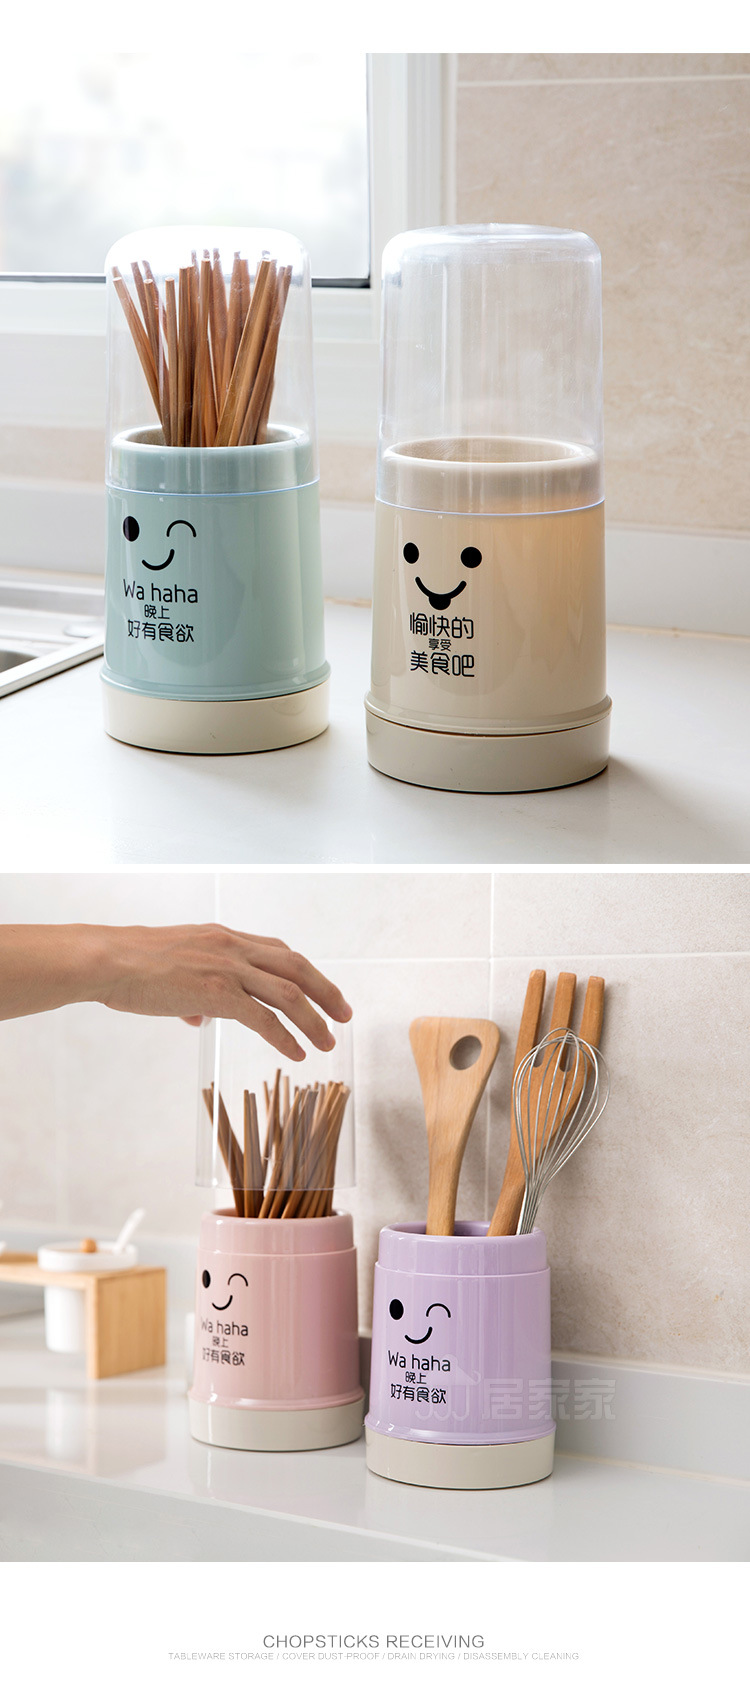 簡約筷子收納桶 廚房必備餐具防塵筷籠 北歐風簡約透明筷桶3